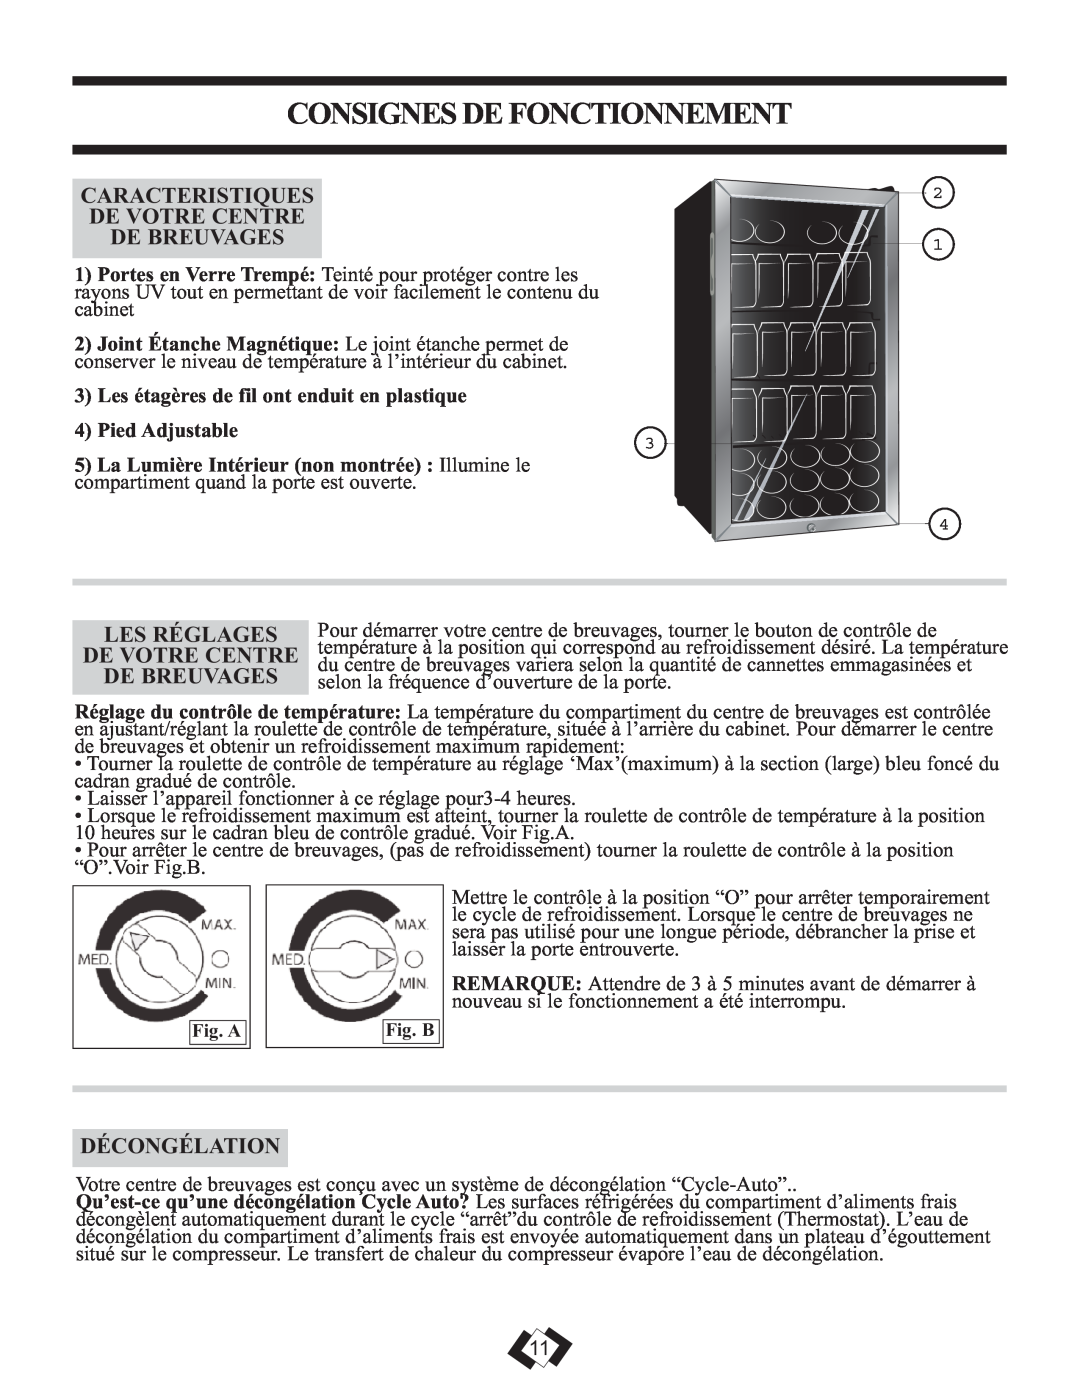 Danby DBC120BLS Consignes De Fonctionnement, Caracteristiques De Votre Centre De Breuvages, Décongélation, Pied Adjustable 